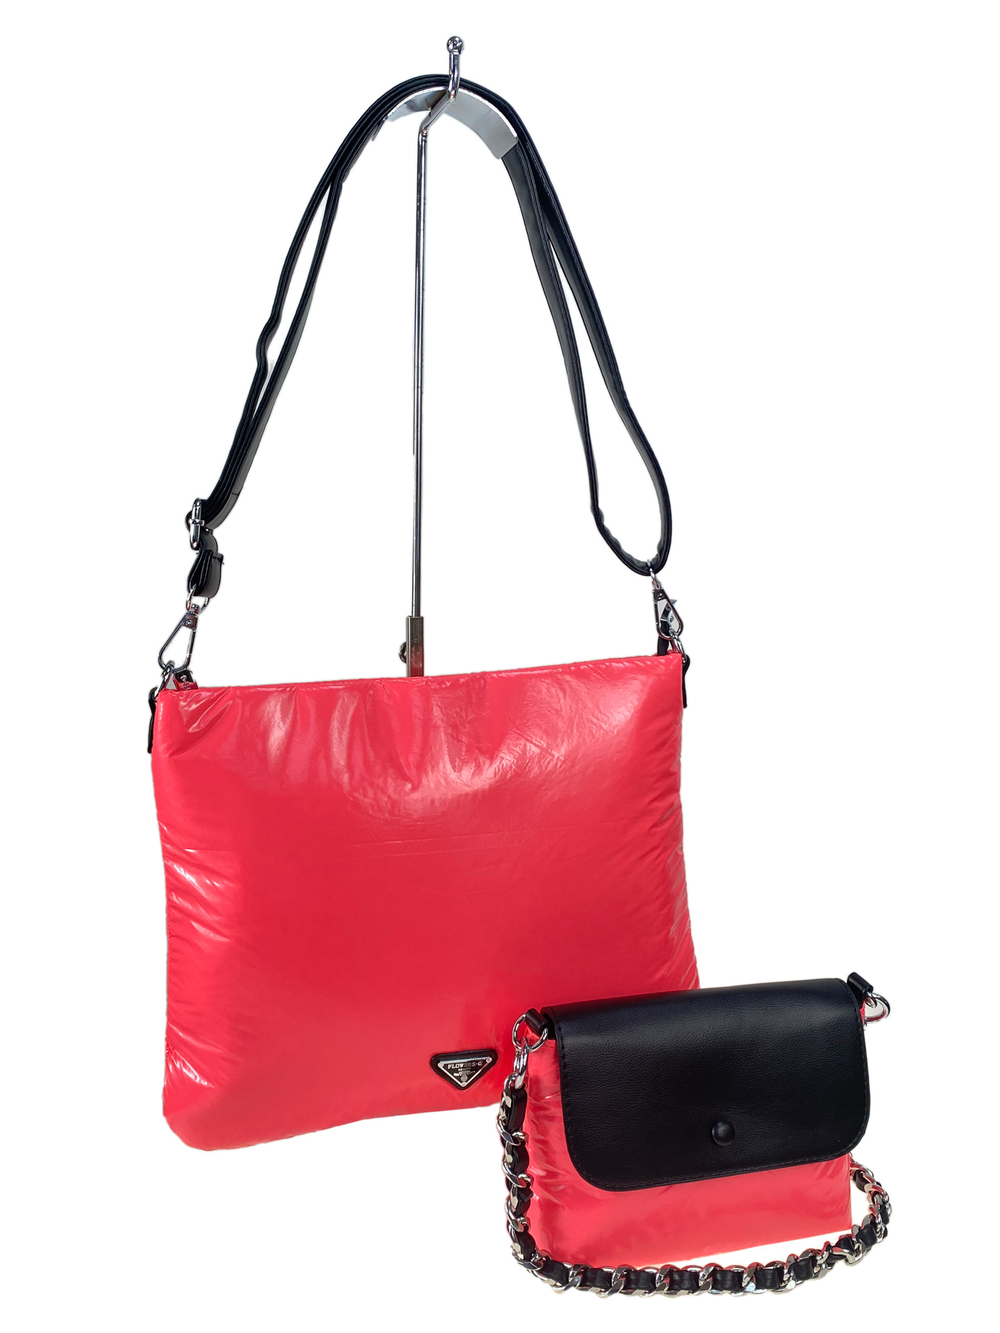 Cтильная женская сумка-шоппер из водоотталкивающей ткани, цвет розовый